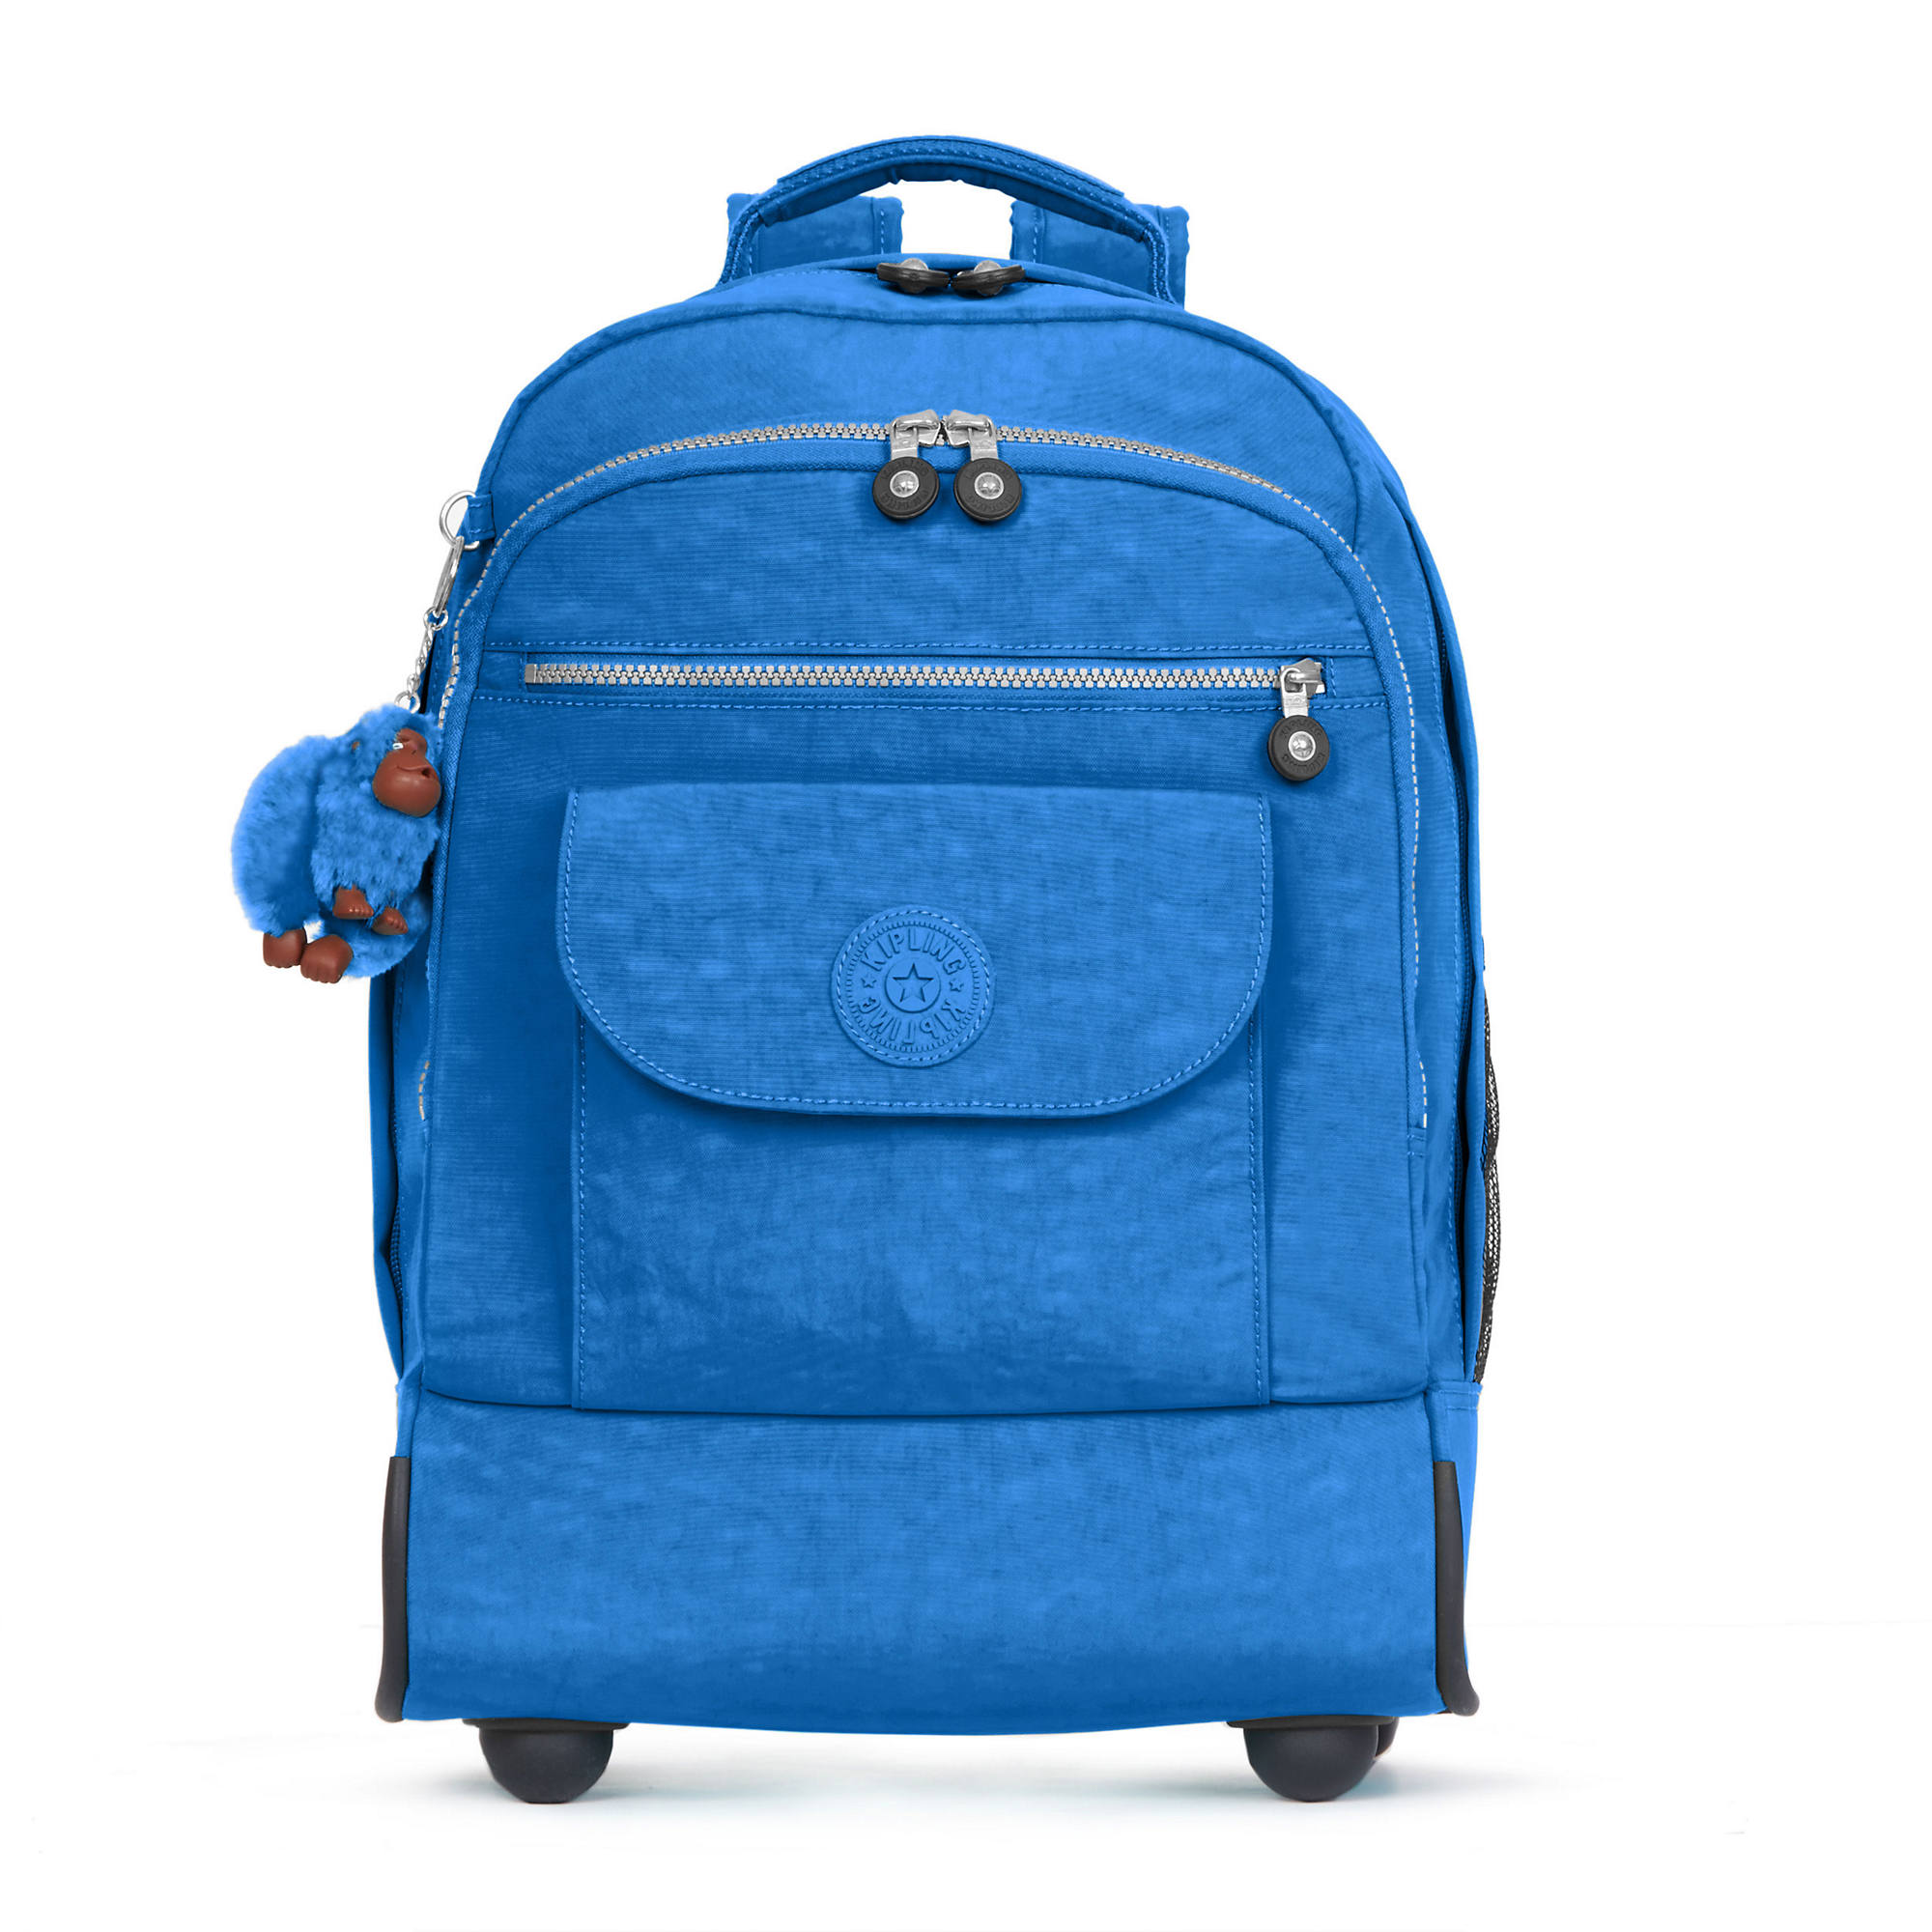 Kipling Sanaa Printed Rolling Backpack | eBay